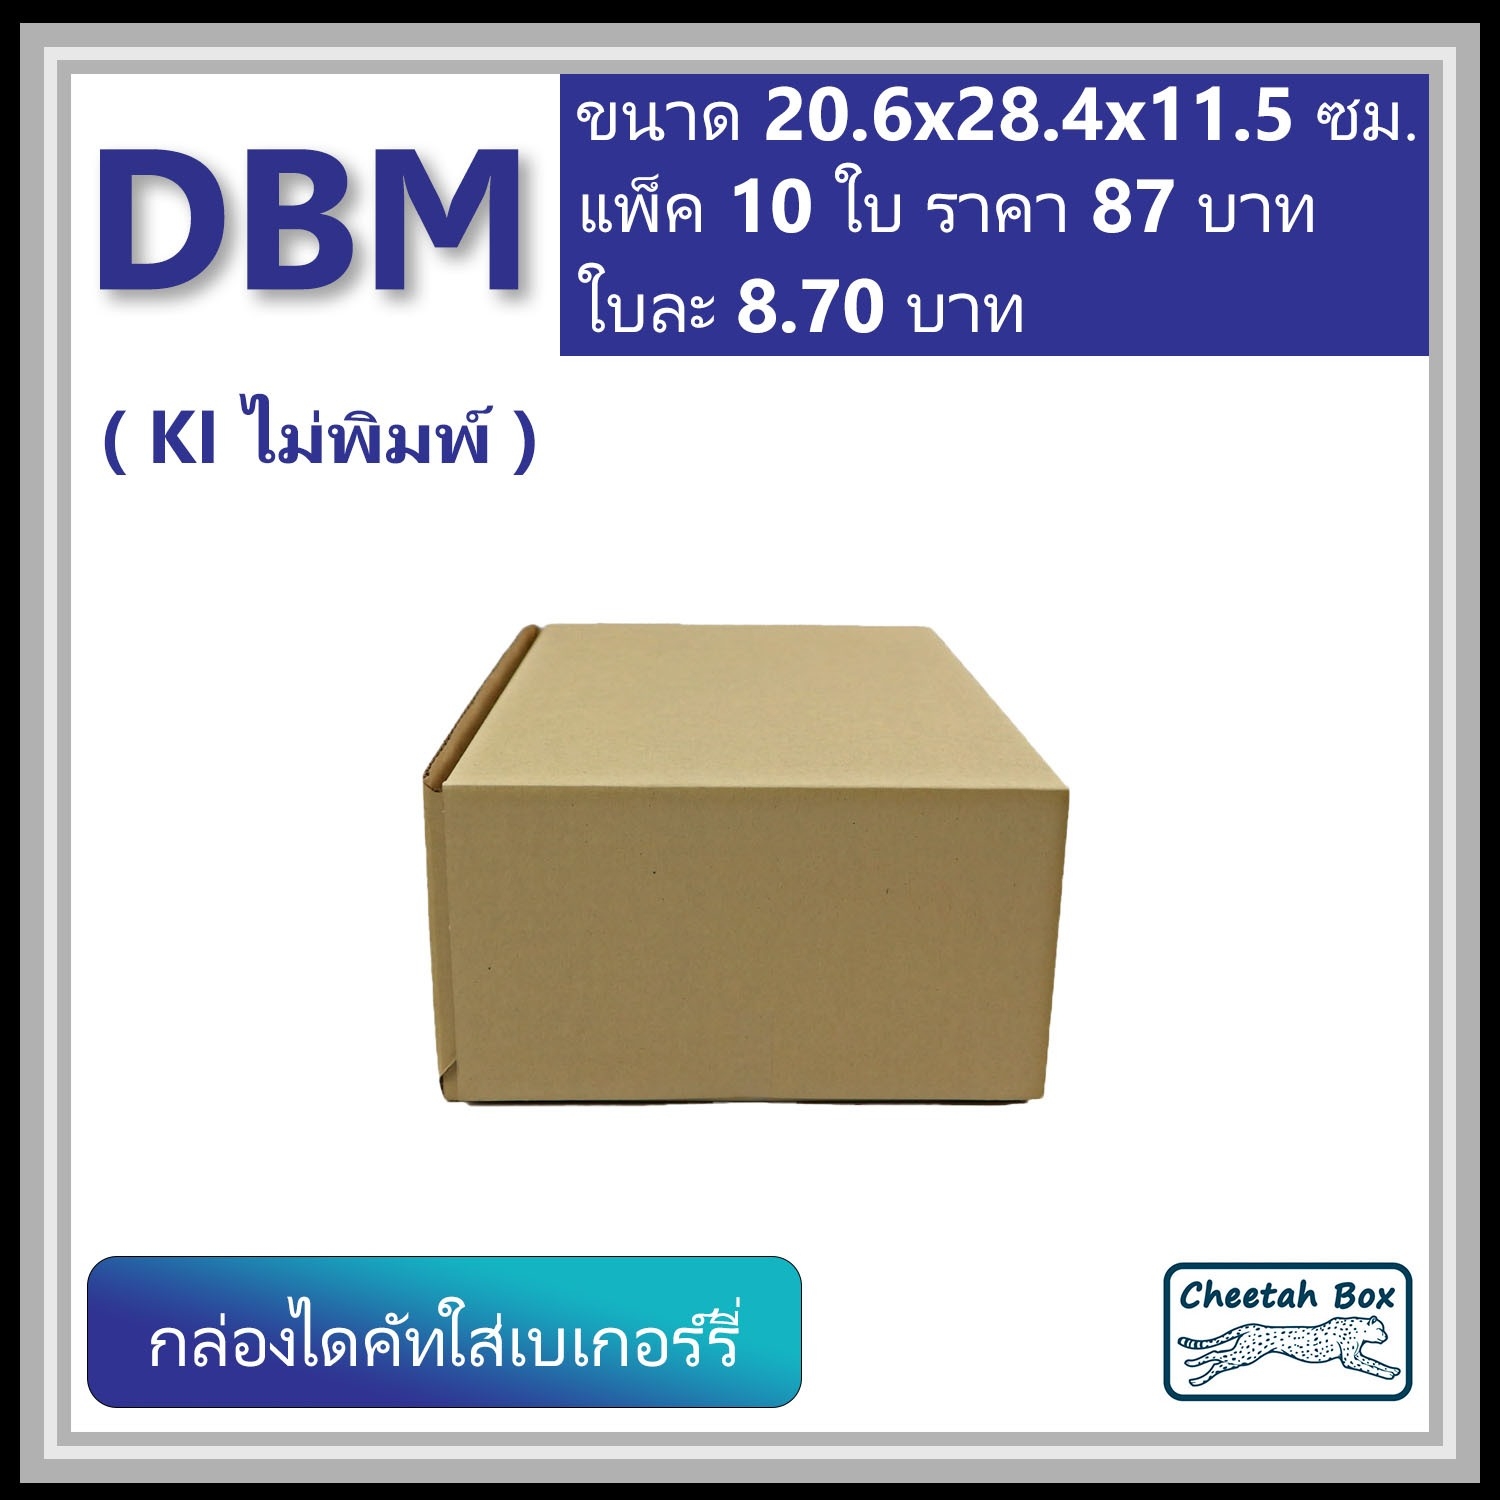 กล่องไดคัทหูช้าง เบเกอร์รี่กลาง รหัส DBM ไม่พิมพ์ (Cheetah Box) 20.6W x 28.4L x 11.5H cm.